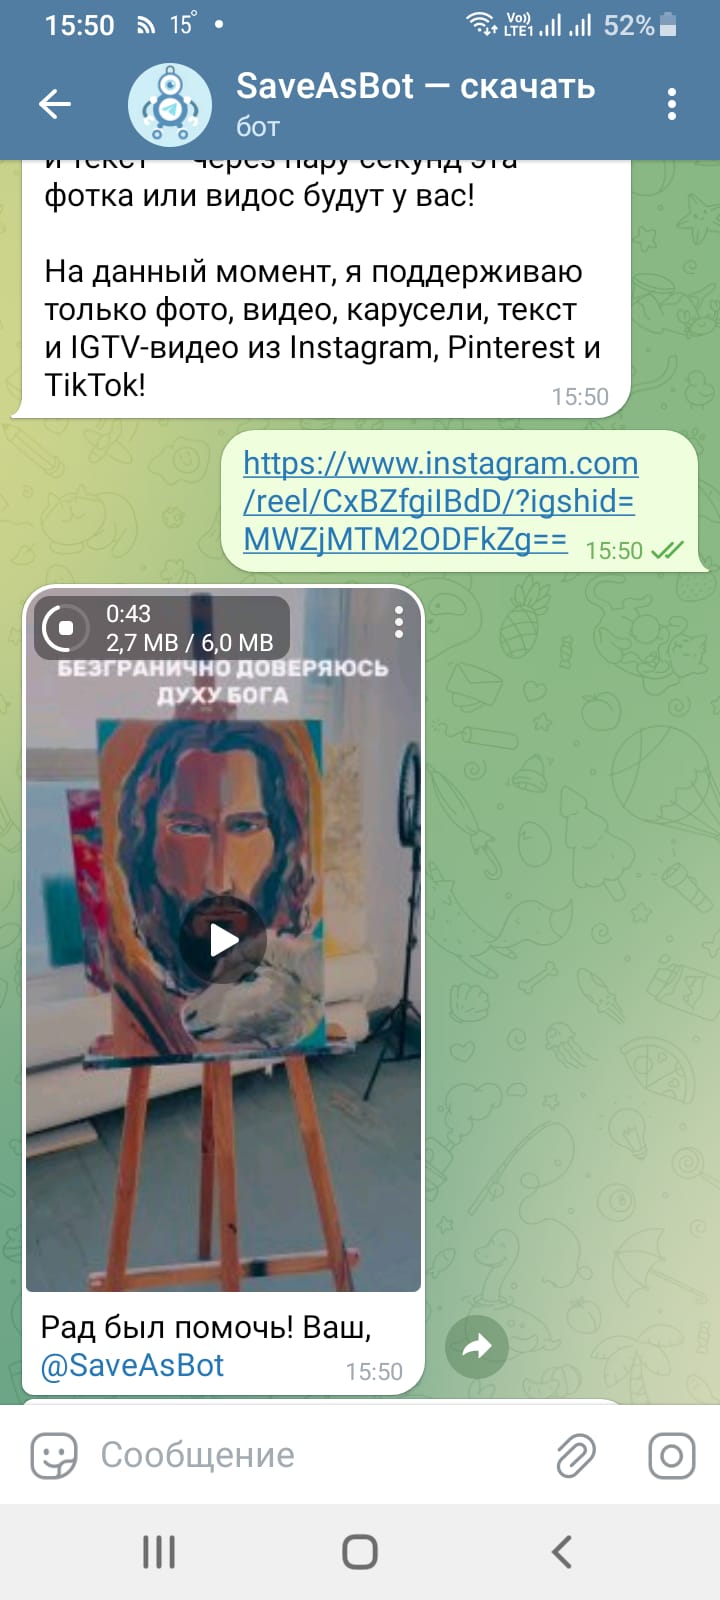 Сообщение с видеороликом из Инстаграм